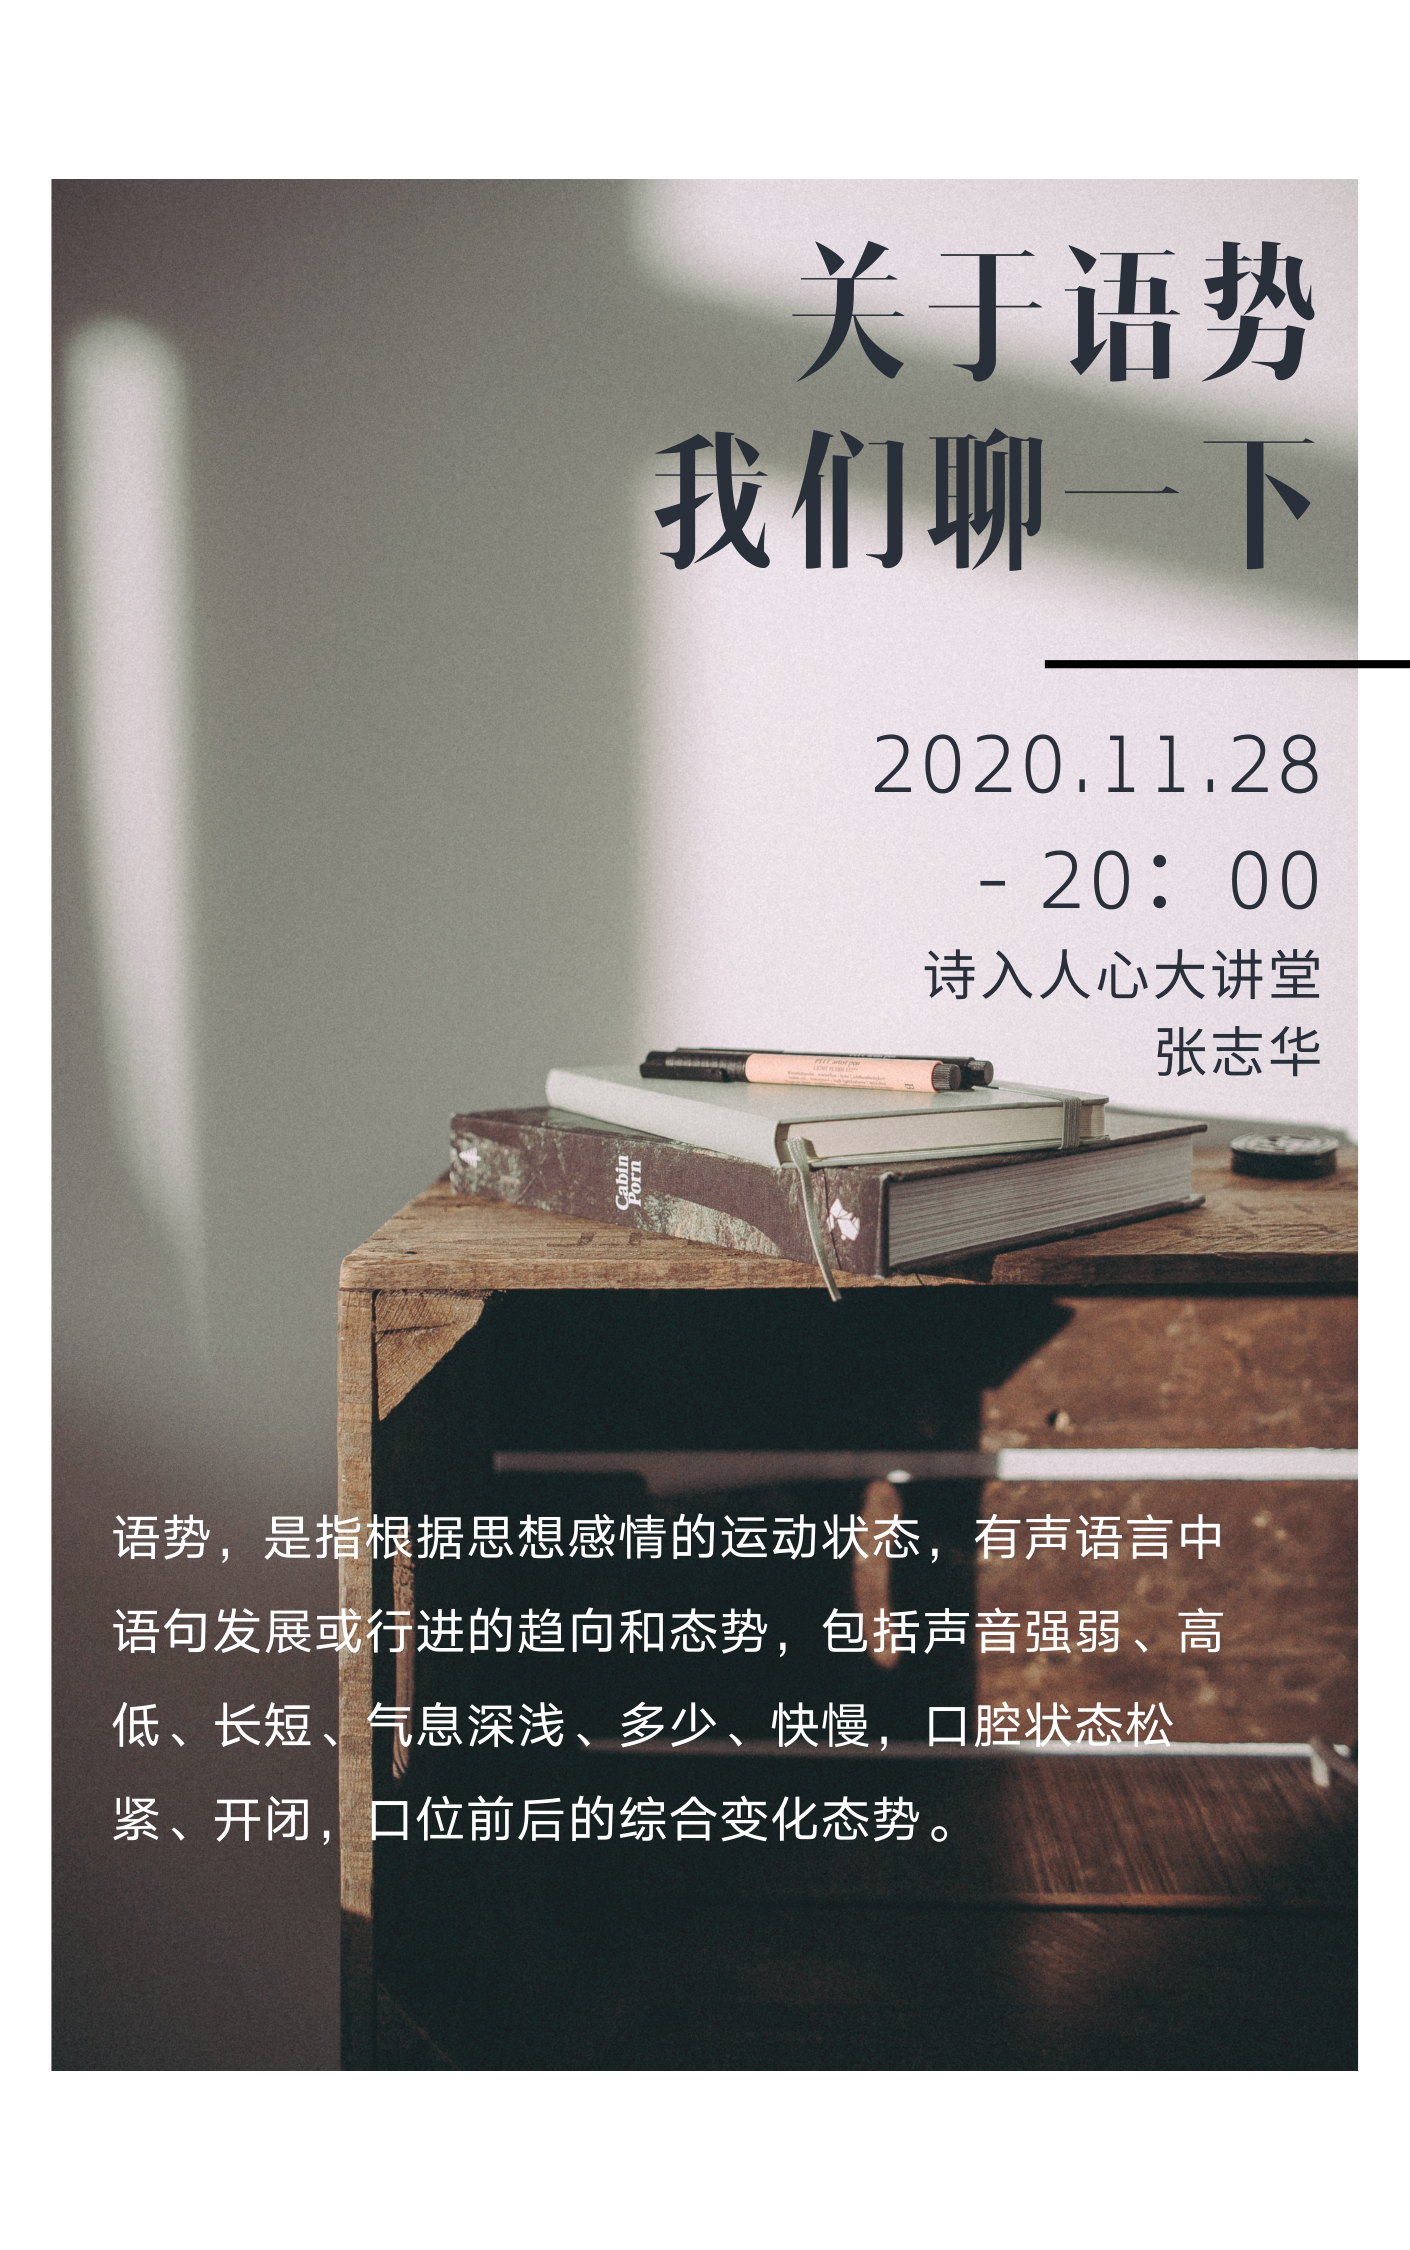 橙红色旧书照片广告公益中文海报.png